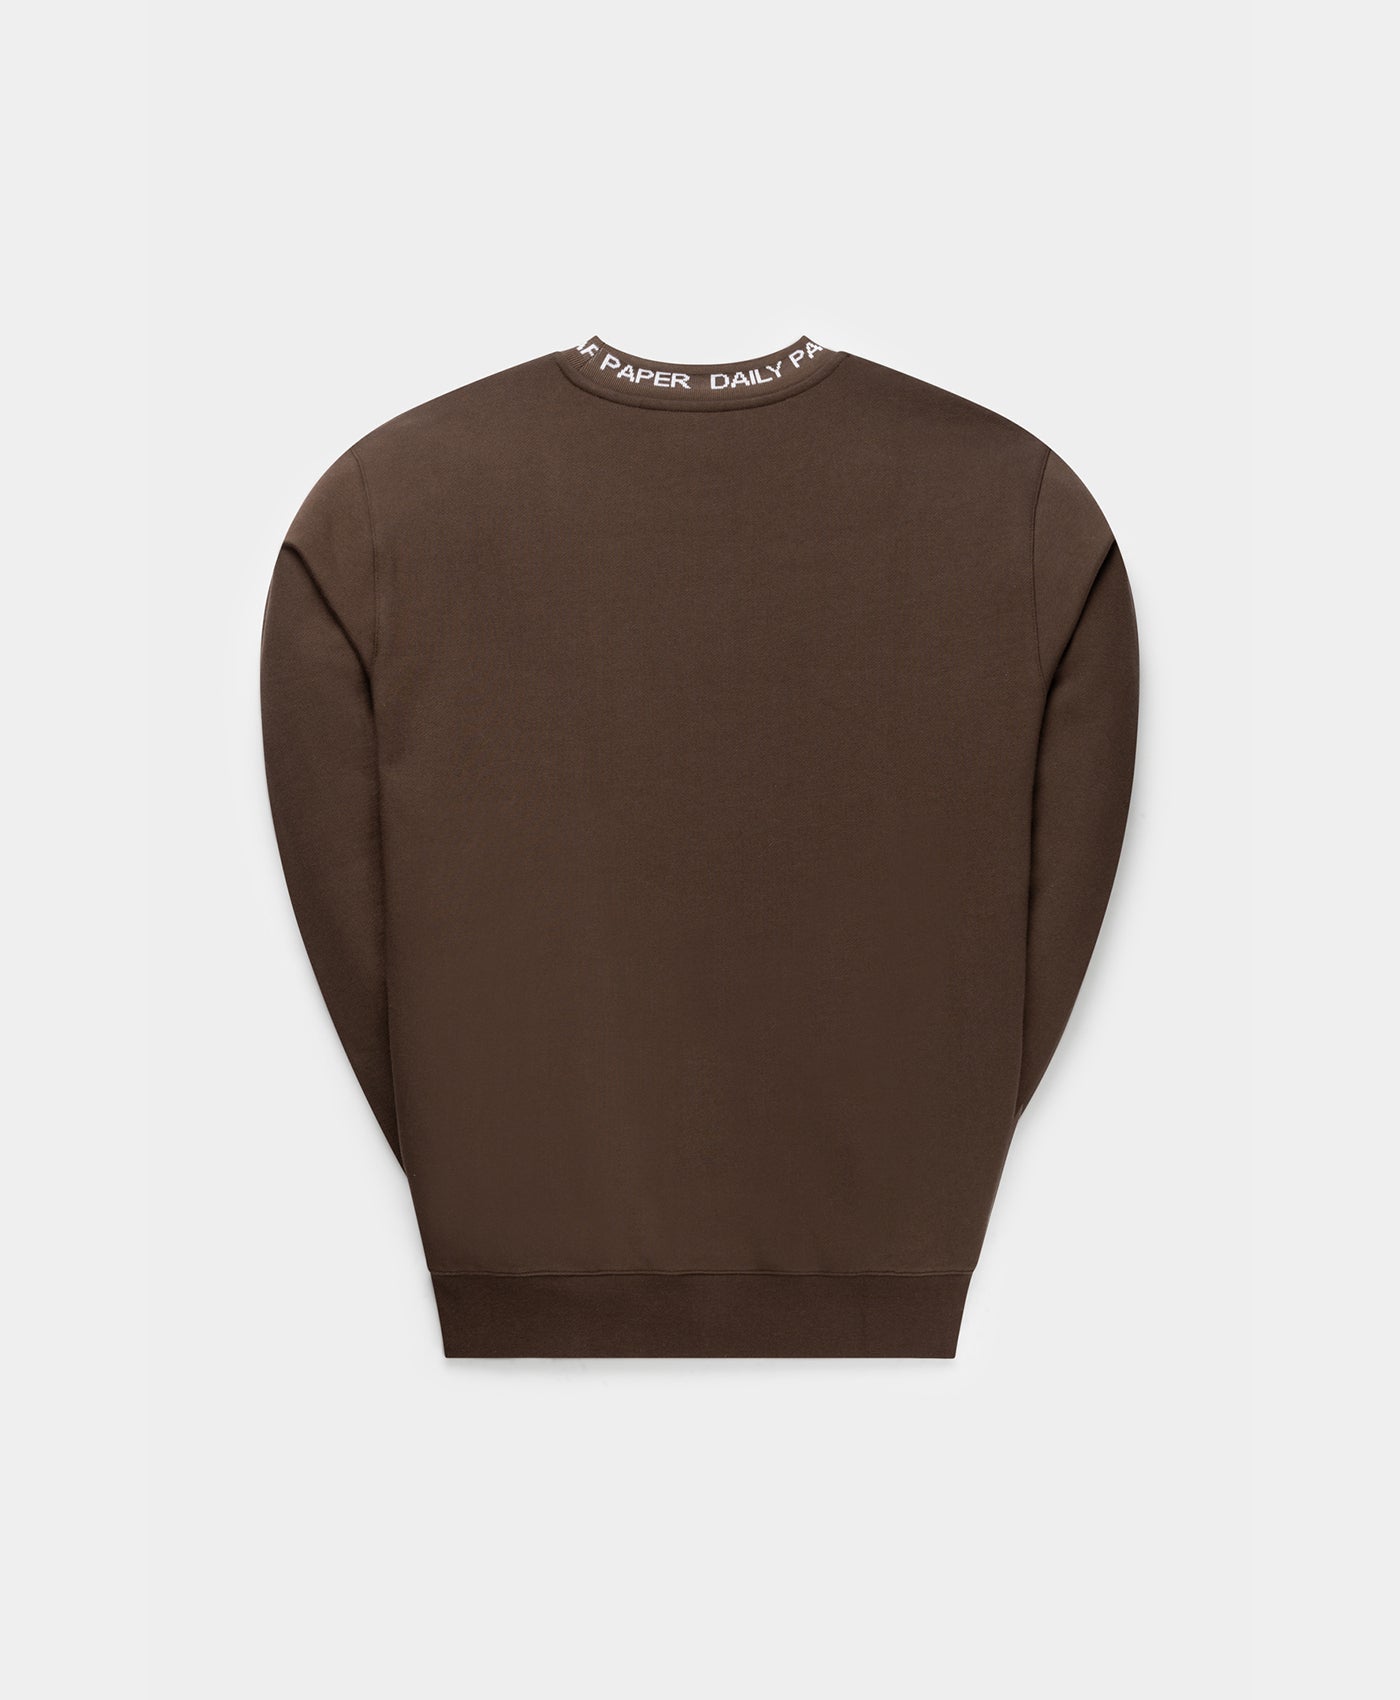 DP - Hot Fudge Brown Erib Sweater - Packshot - Rear